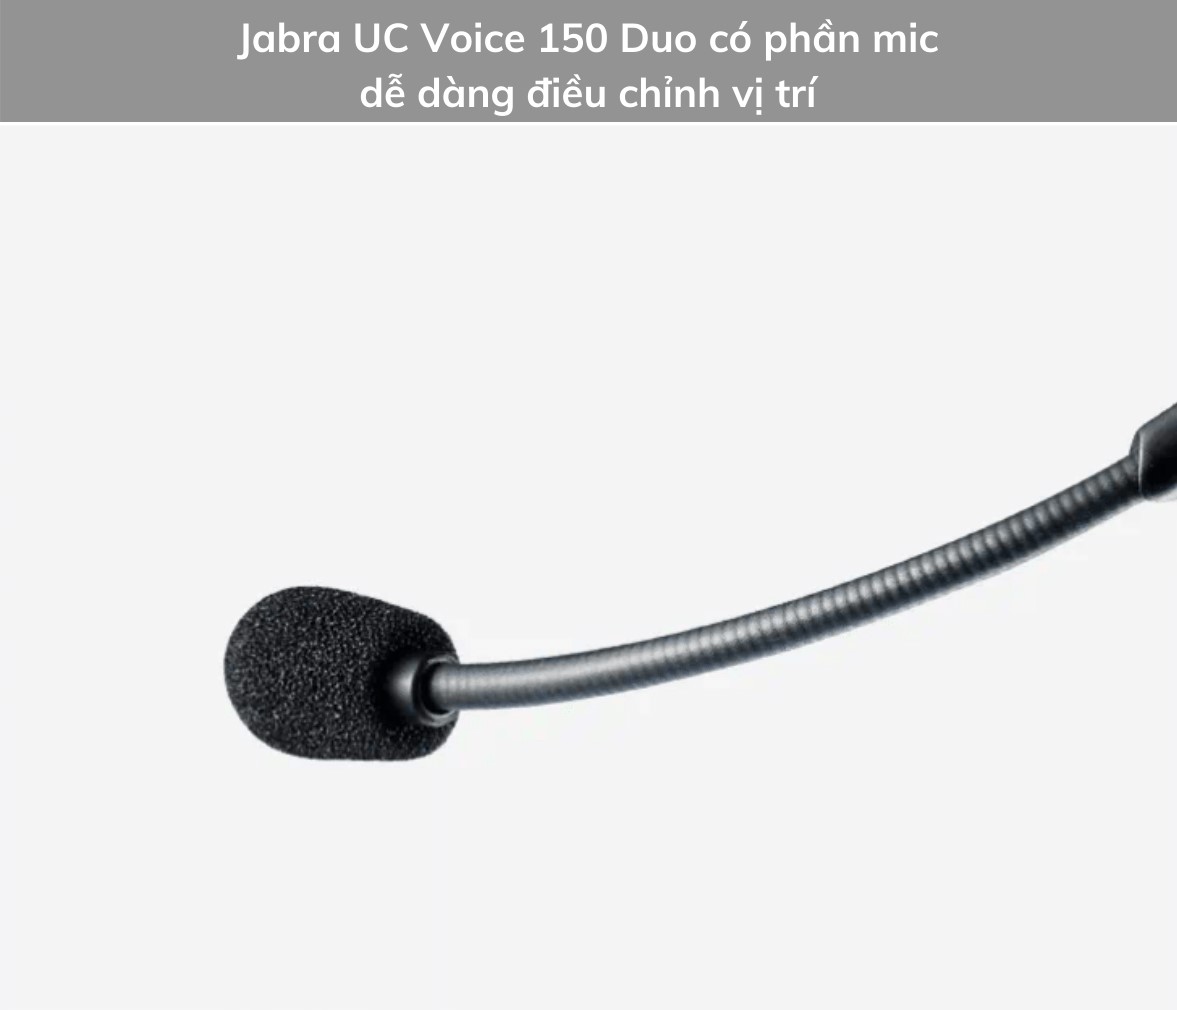 Jabra UC Voice 150 Duo